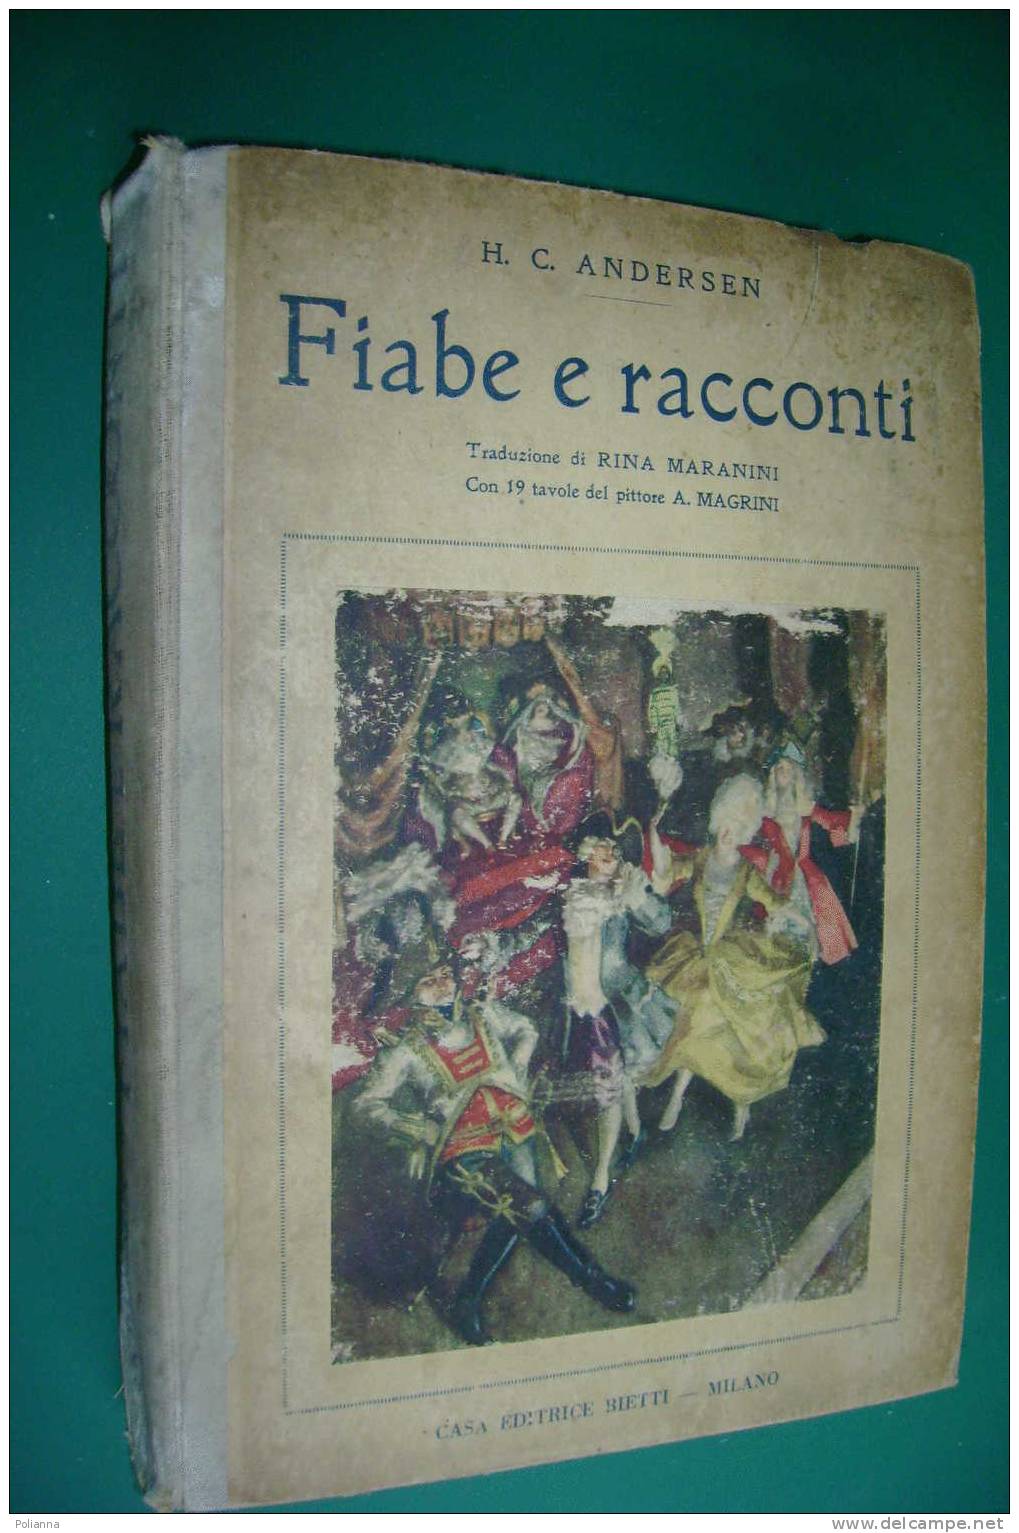 PDW/4 Andersen FIABE E RACCONTI Ed. Bietti 1946/Ill. Magrini - Old